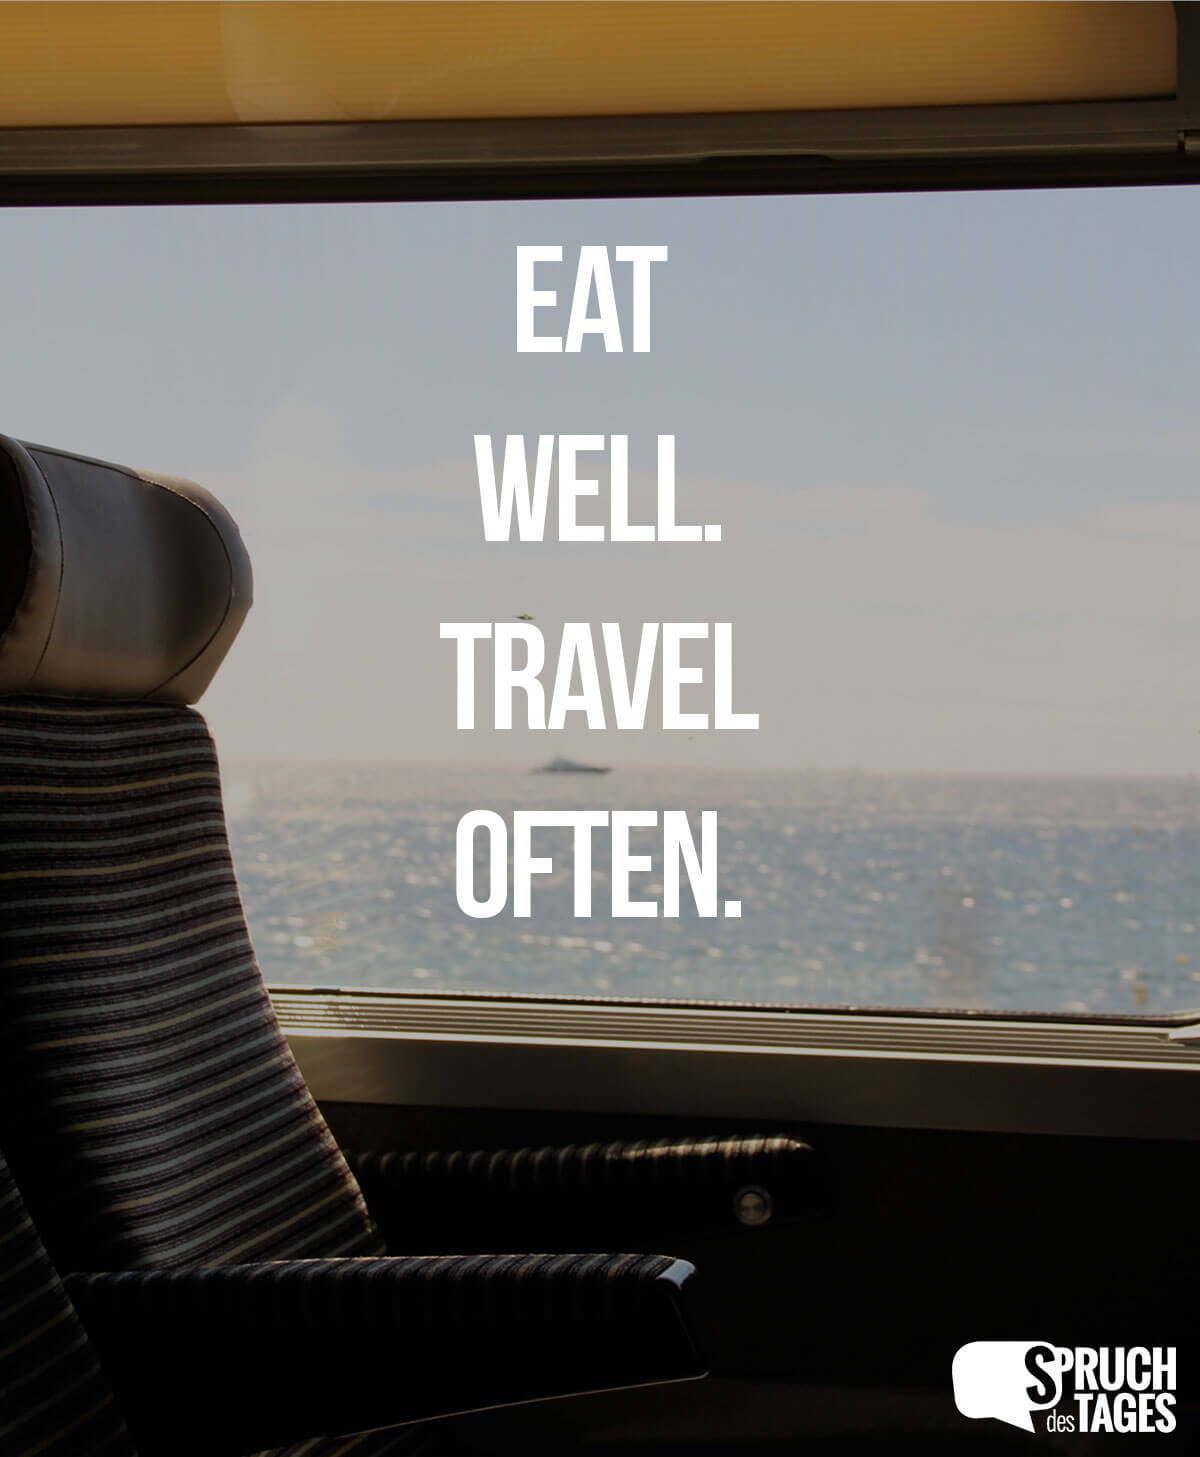 Eat well. Travel often.